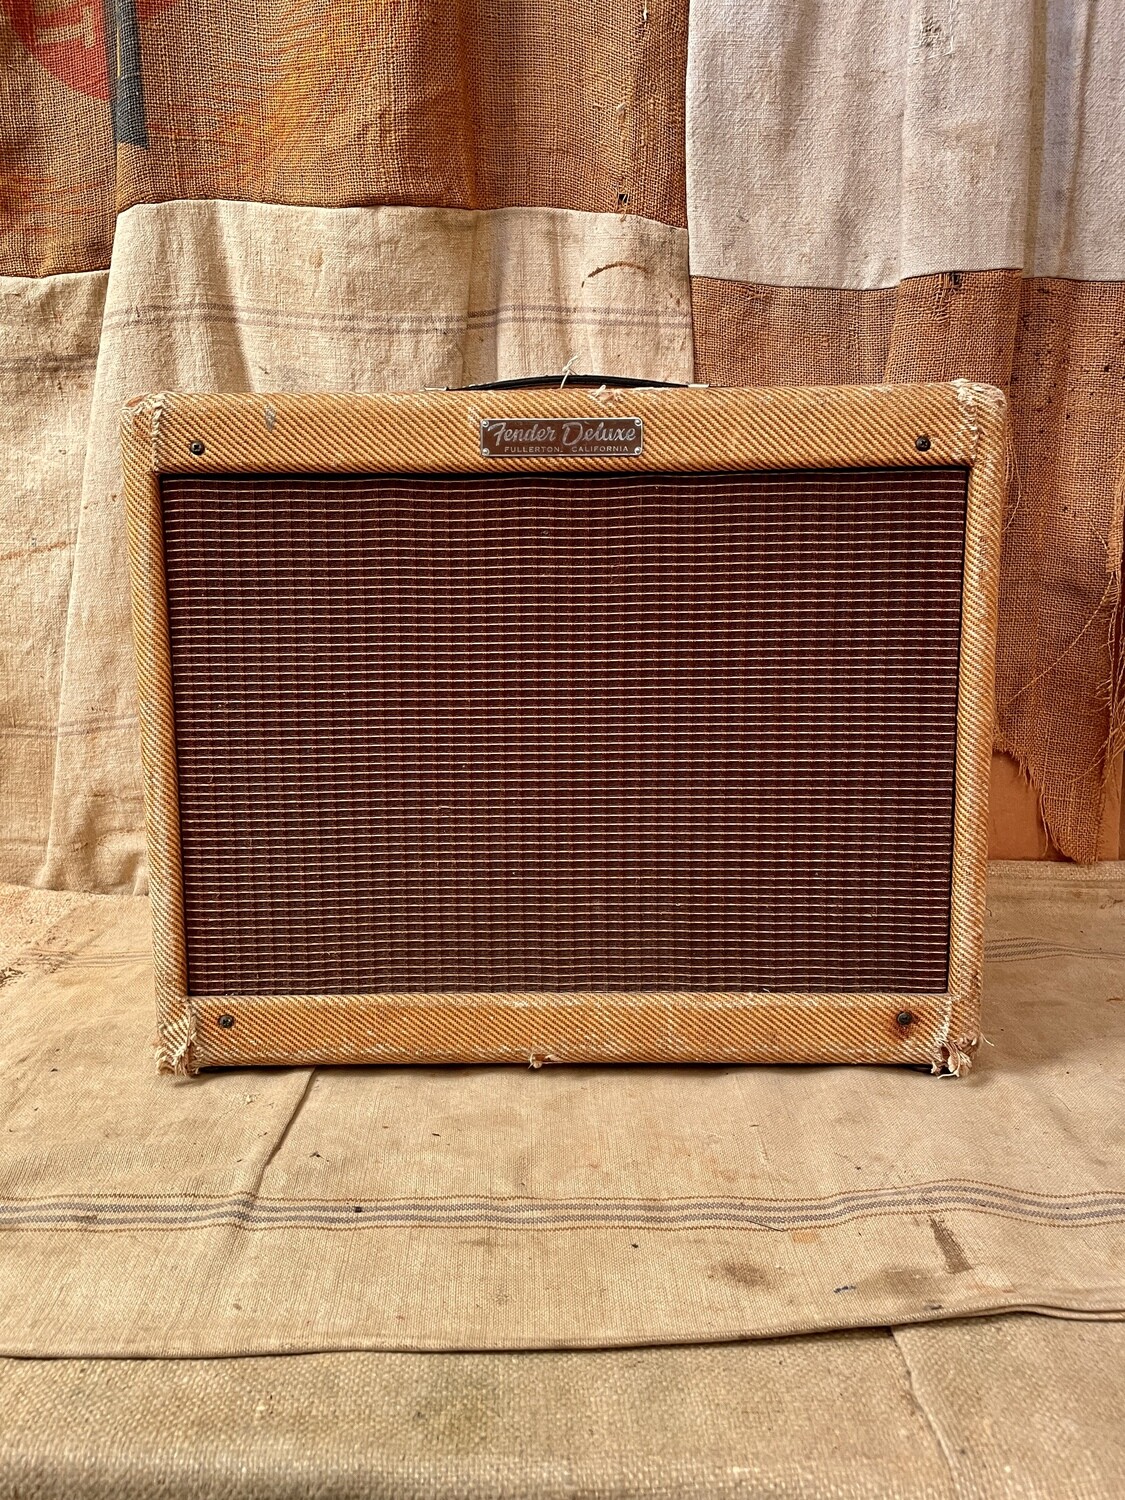 1956 Fender Deluxe Tweed Amplifier